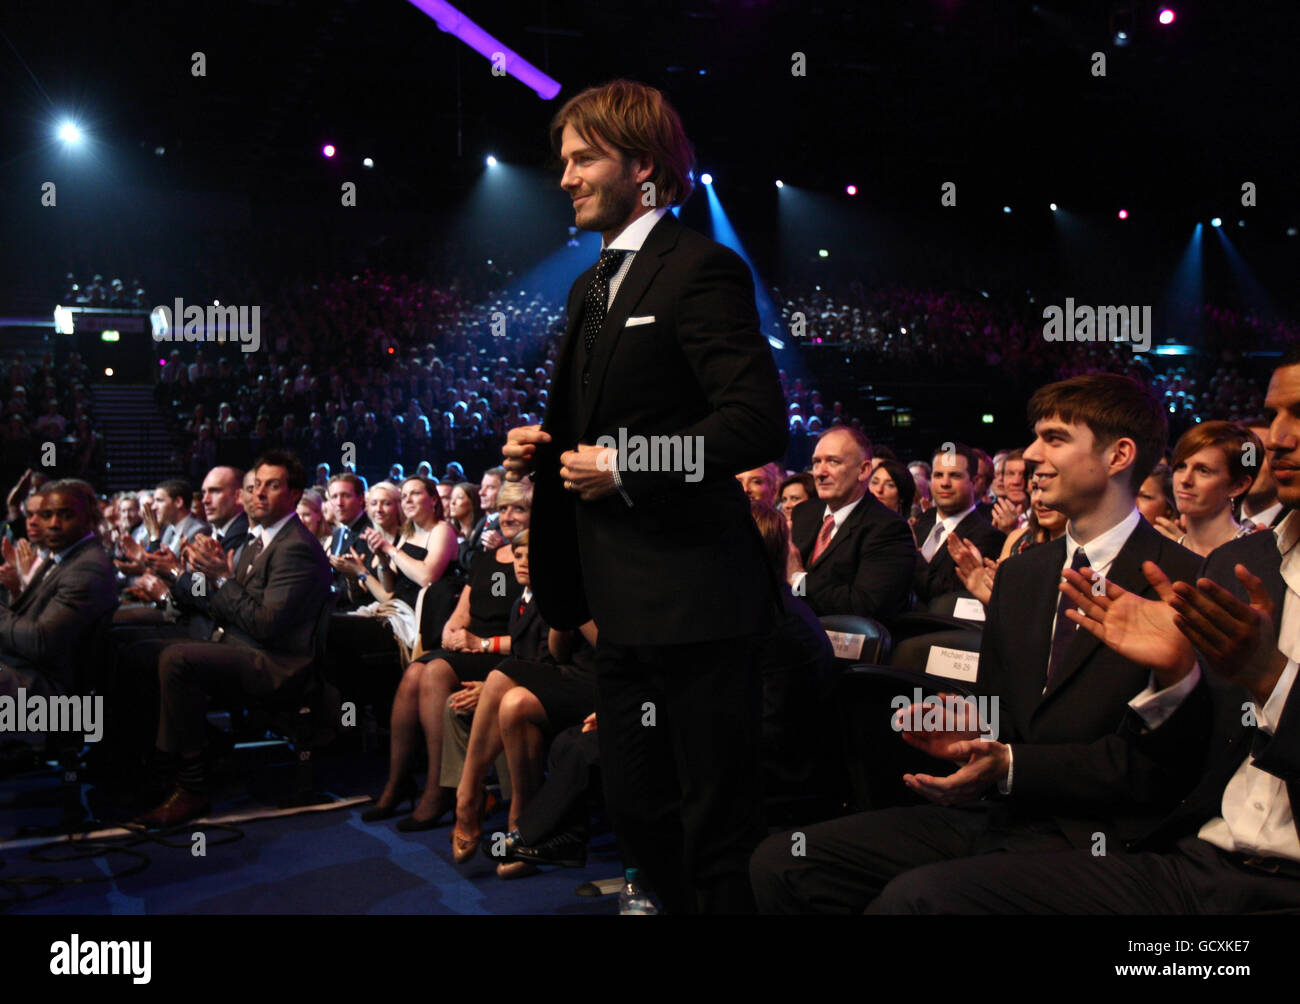 Ganador del premio Lifetime Achievement, David Beckham durante los premios BBC Sport Personality of the Year Awards en el LG Arena, Birmingham. Foto de stock